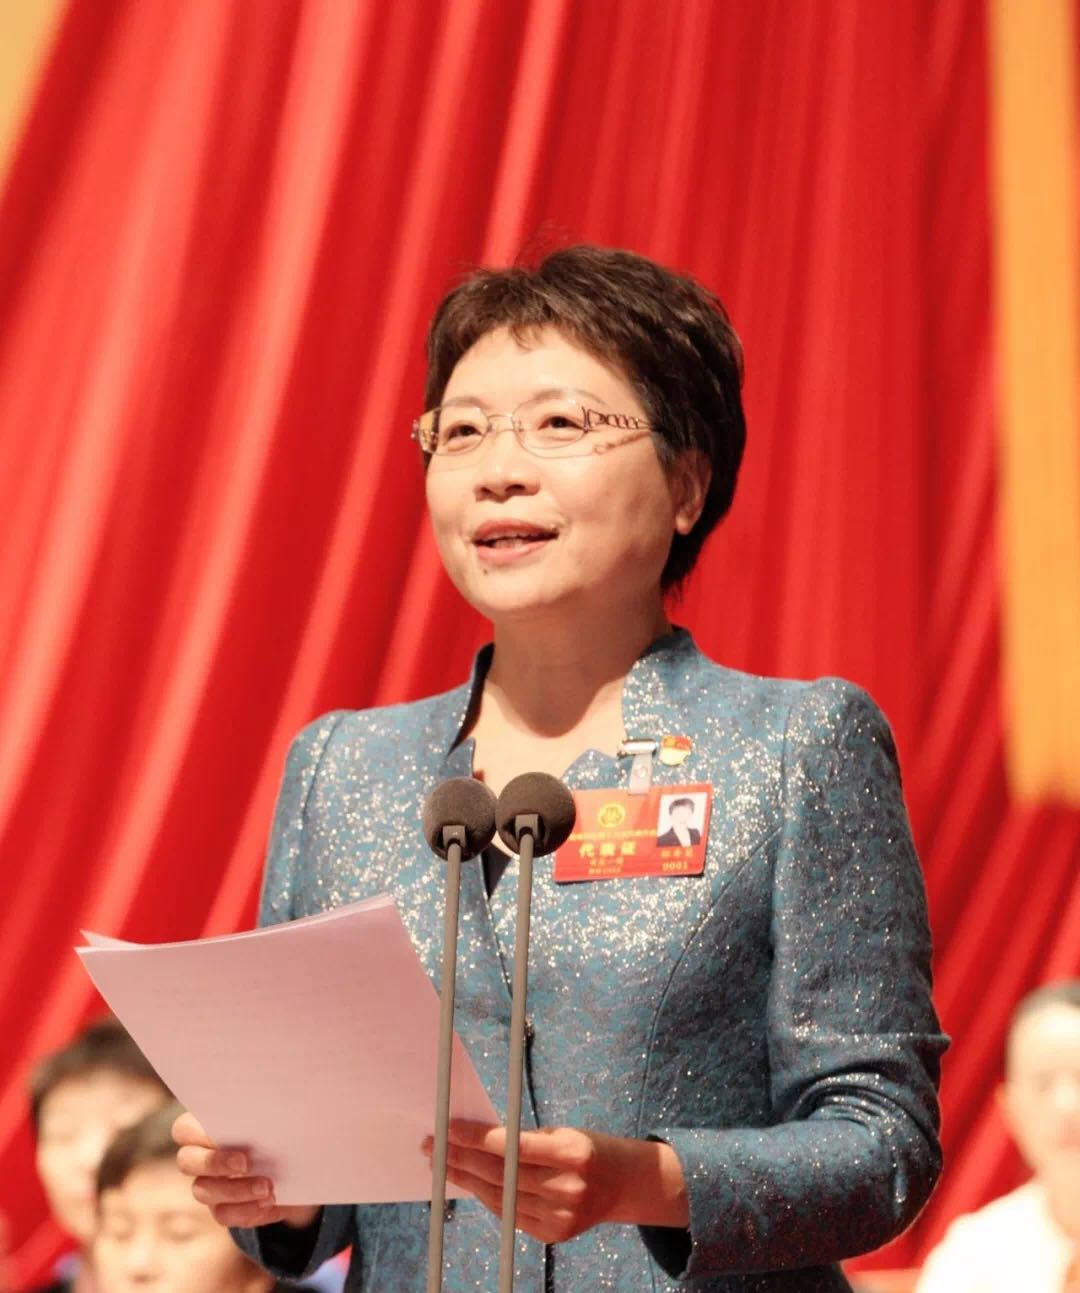 郜秀菊同志当选为河南省妇联第十三届主席